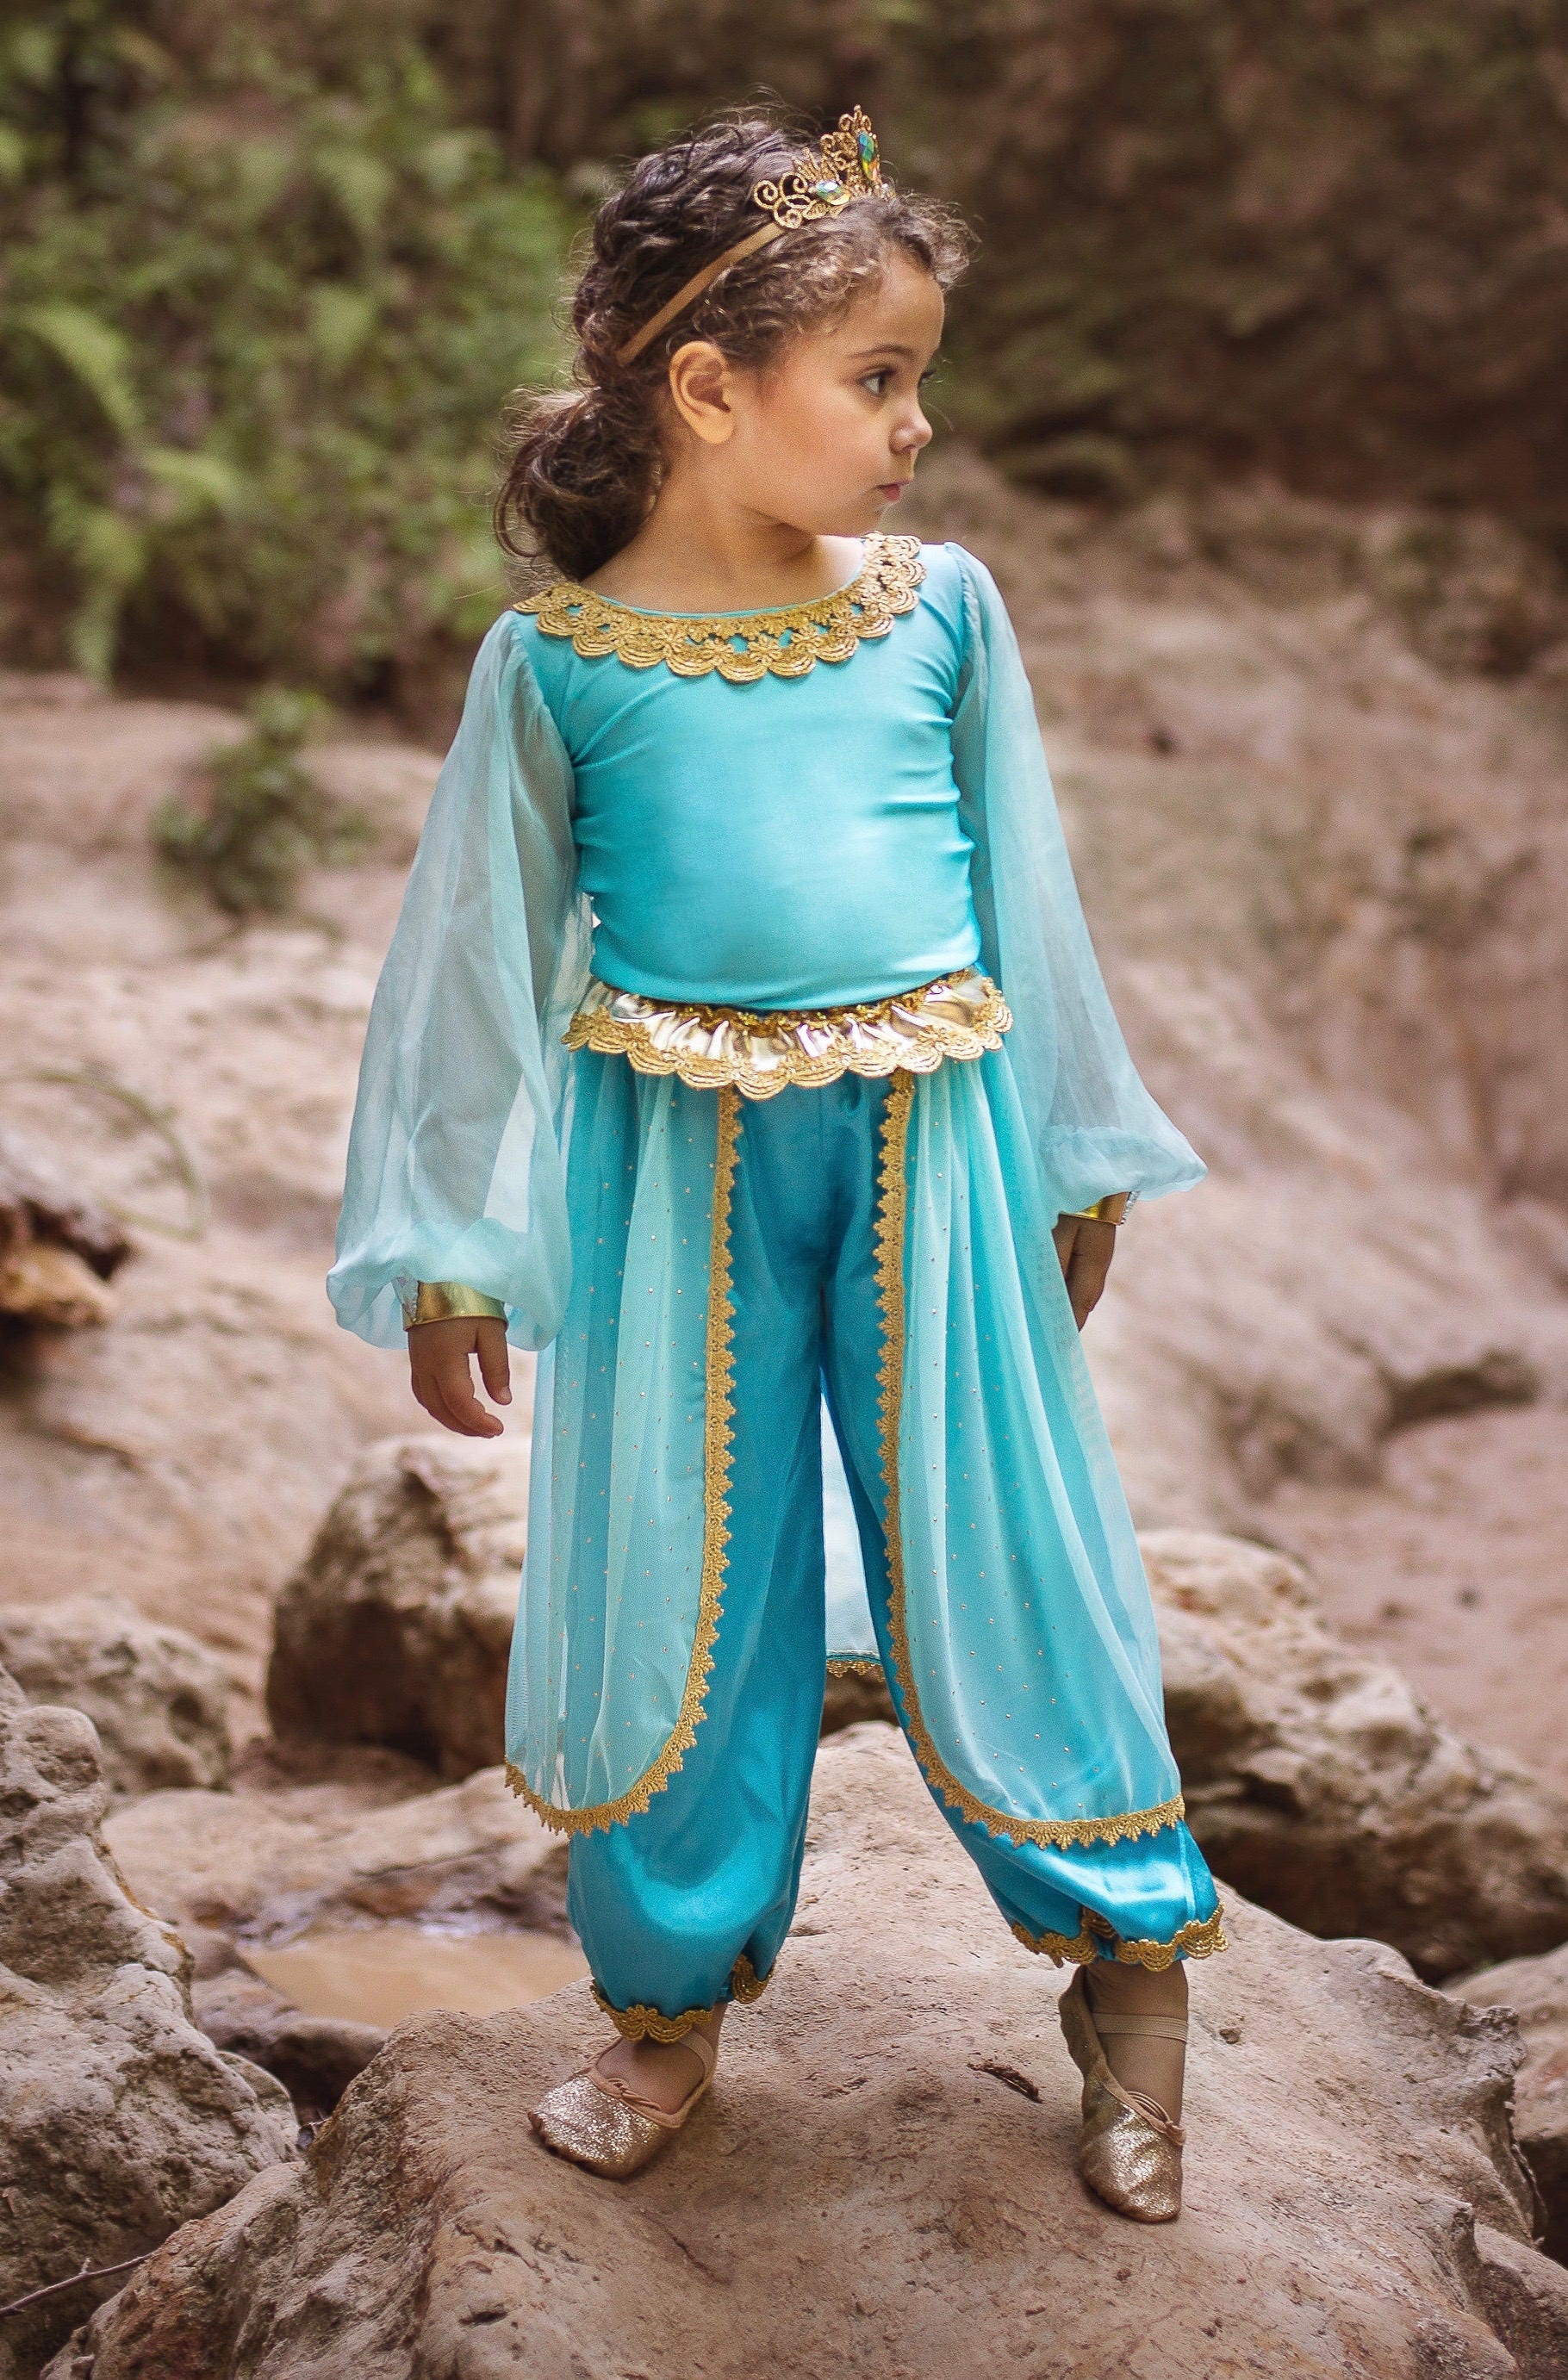 Kit ou déguisement Arab Princess pour fille